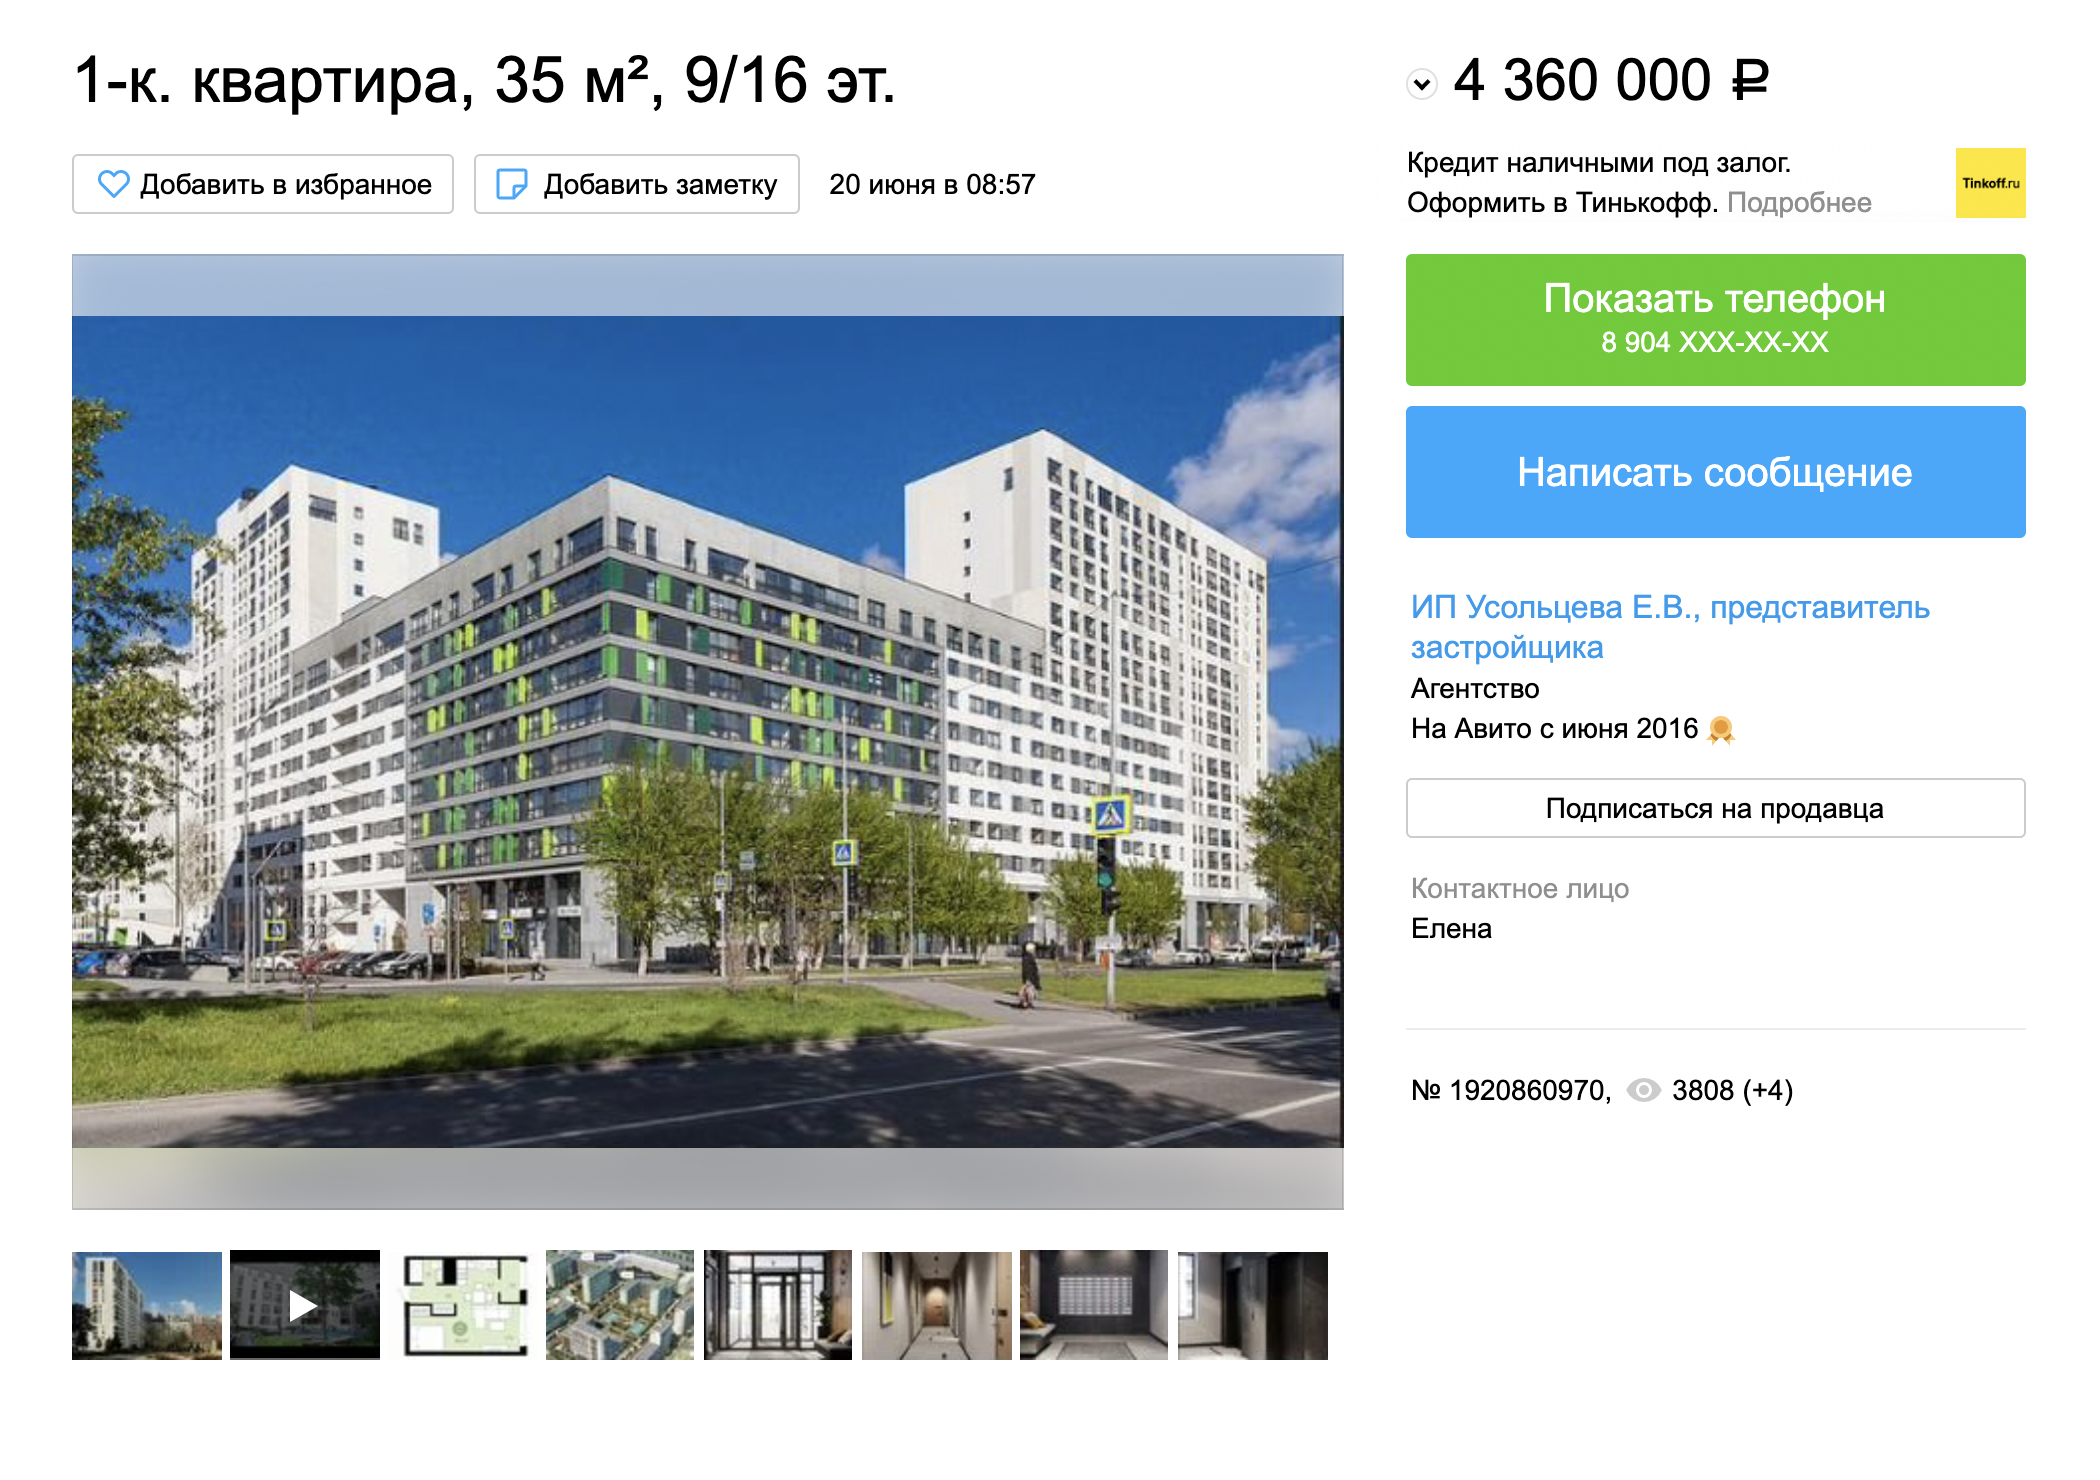 Однокомнатная квартира бизнес-класса в ЖК «Новин» обойдется в 4,36 млн рублей